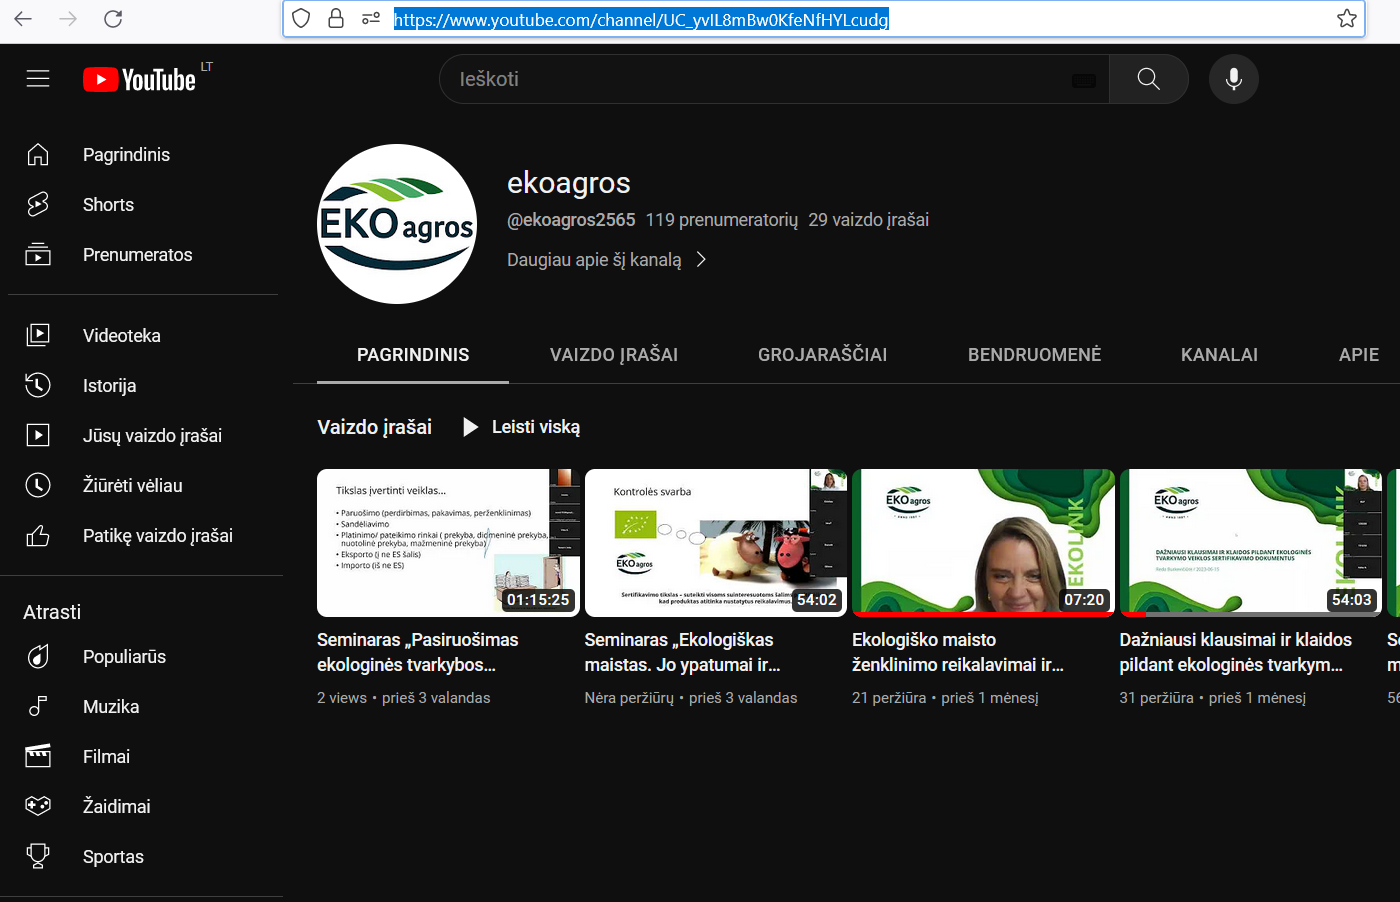 Ekoagros youtube